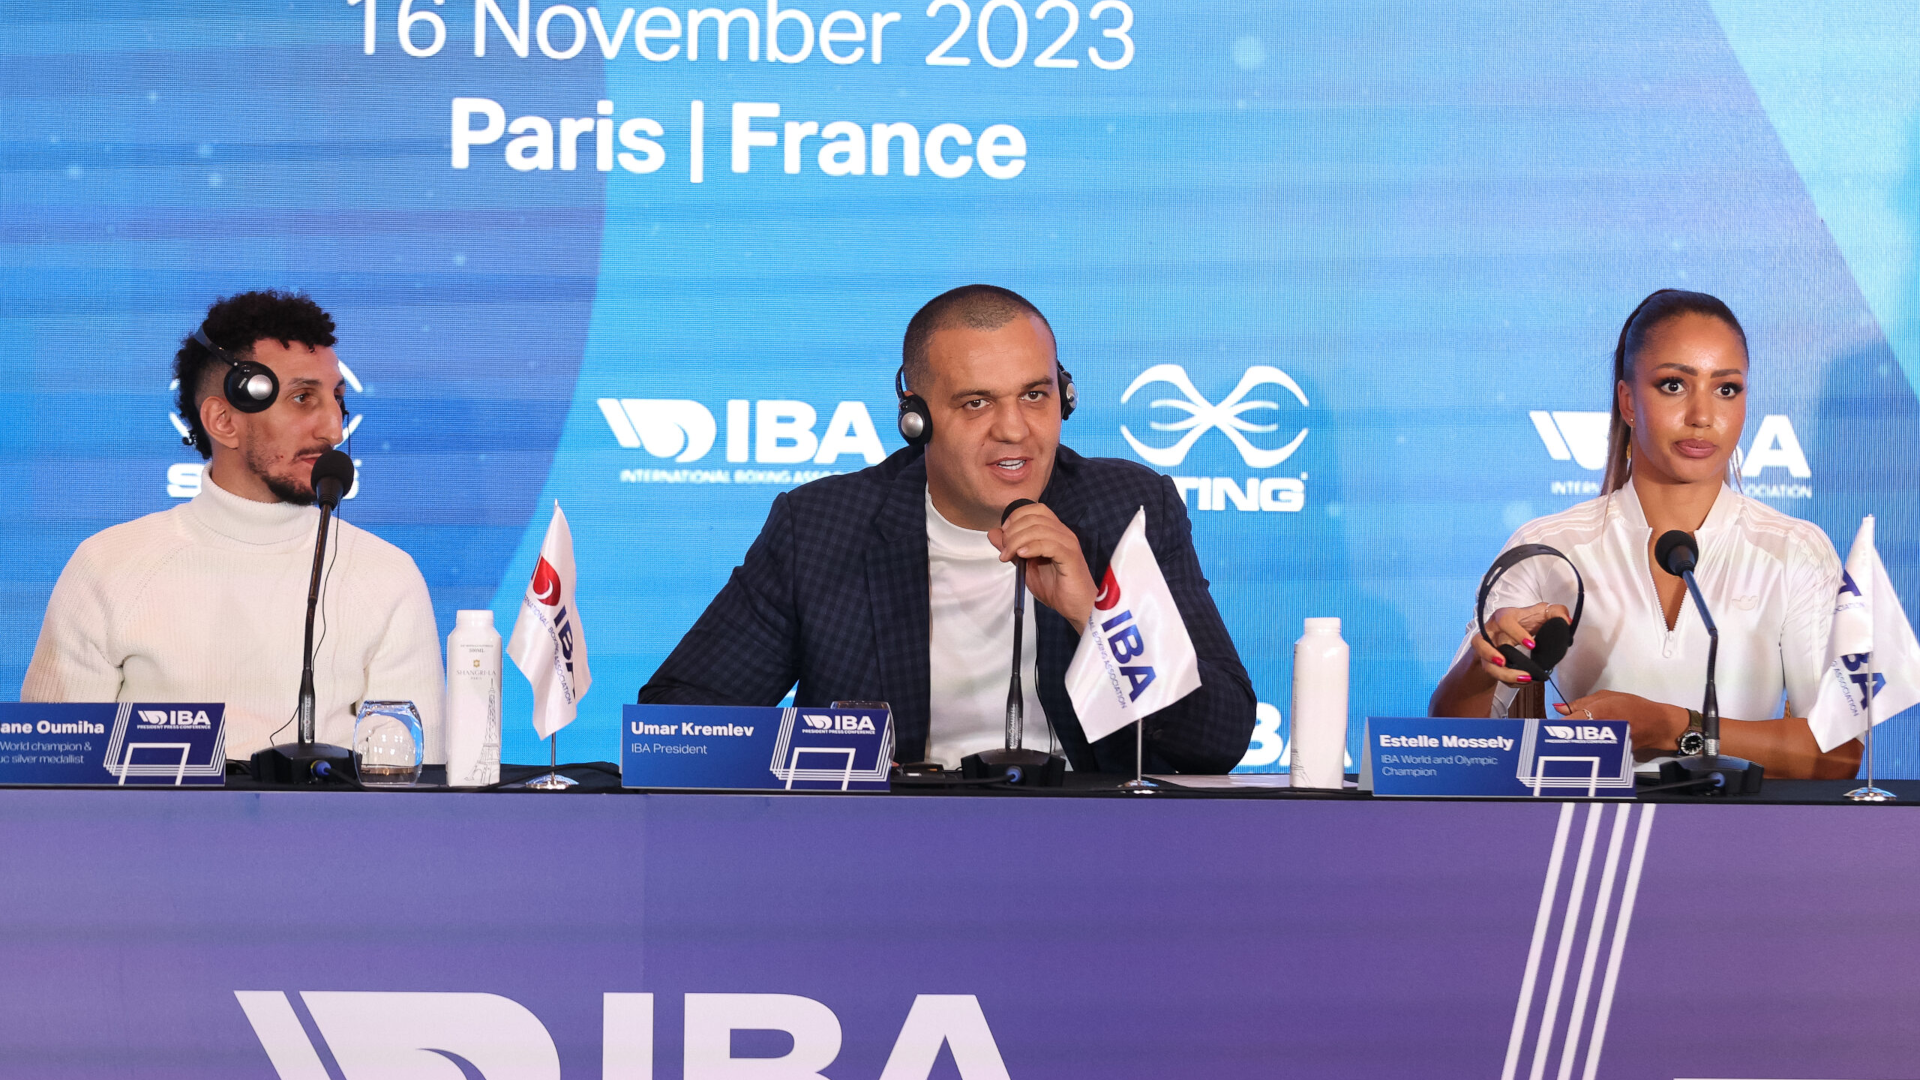 Press conference IBA paris